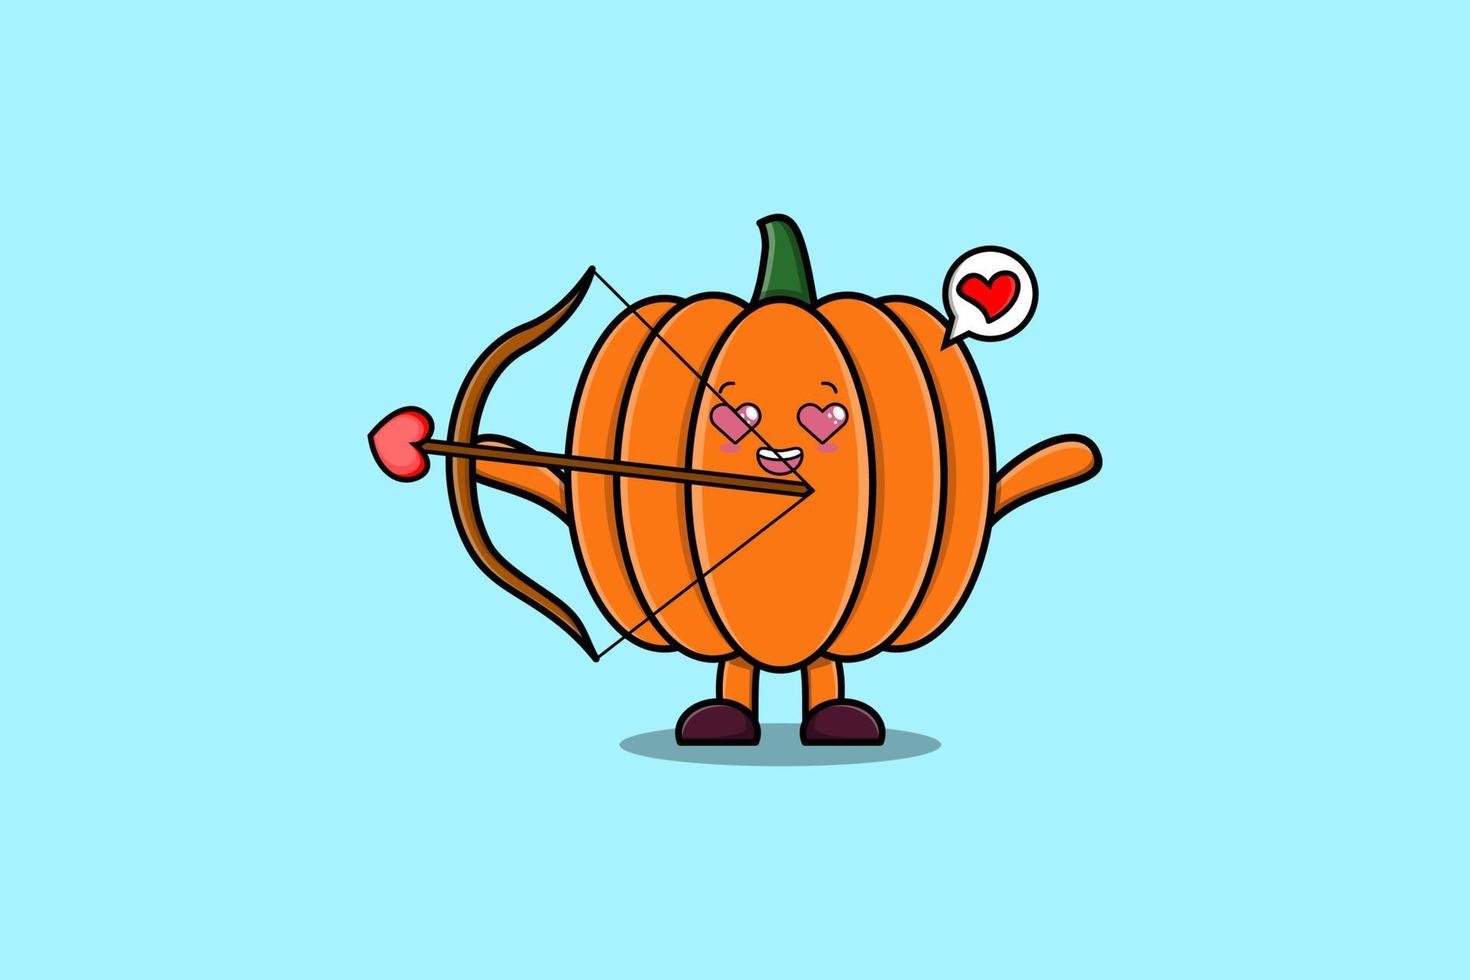 Cute cartoon character romantic cupid Pumpkin vector